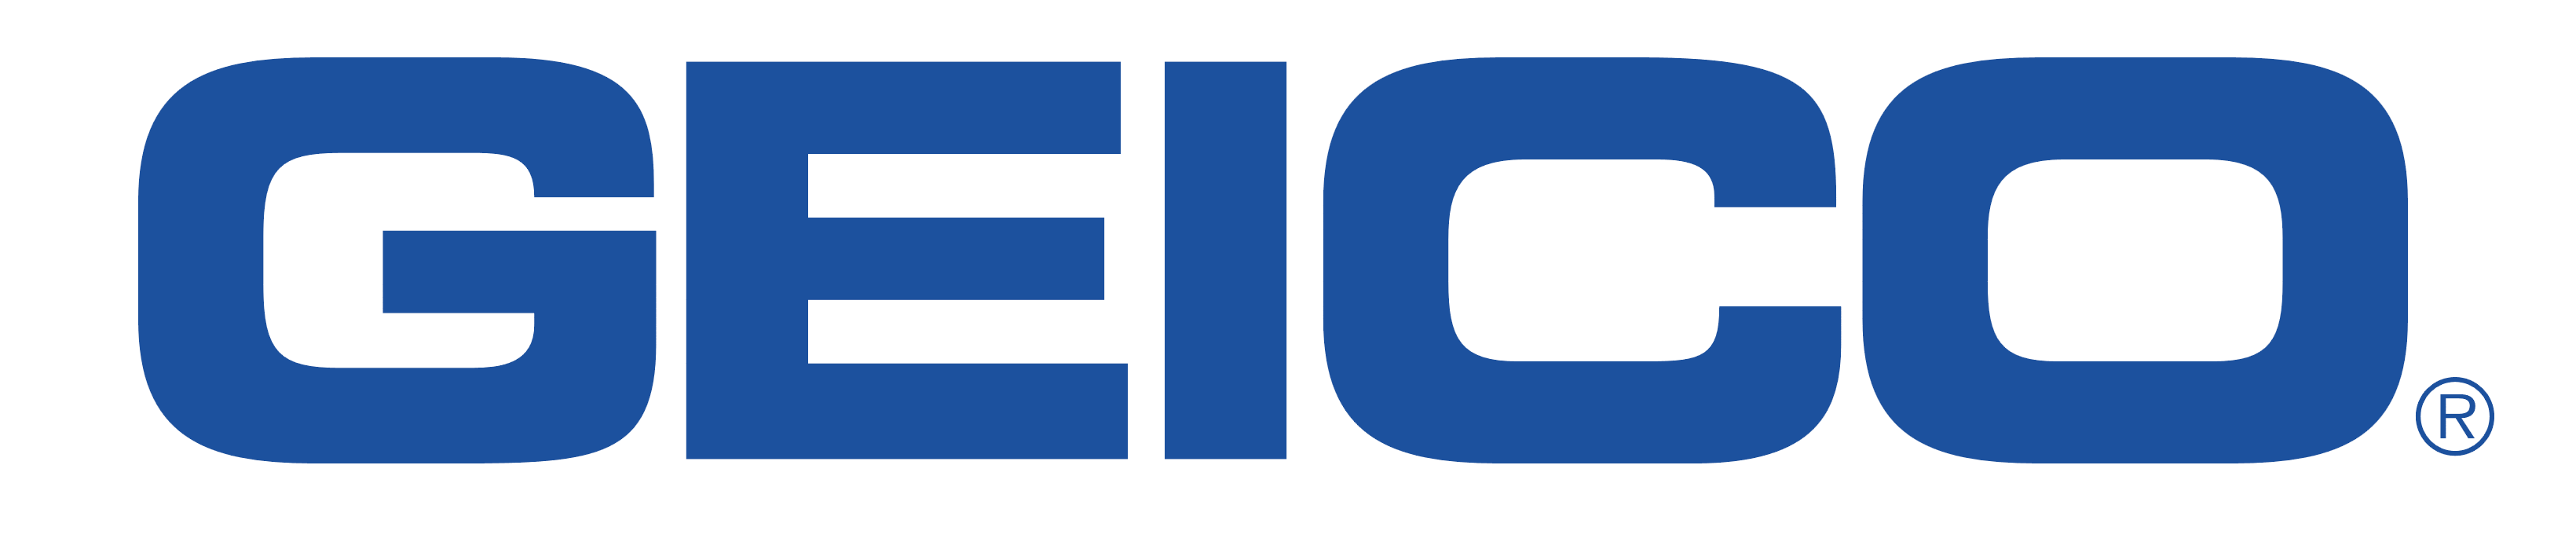 Geico logo, logotype